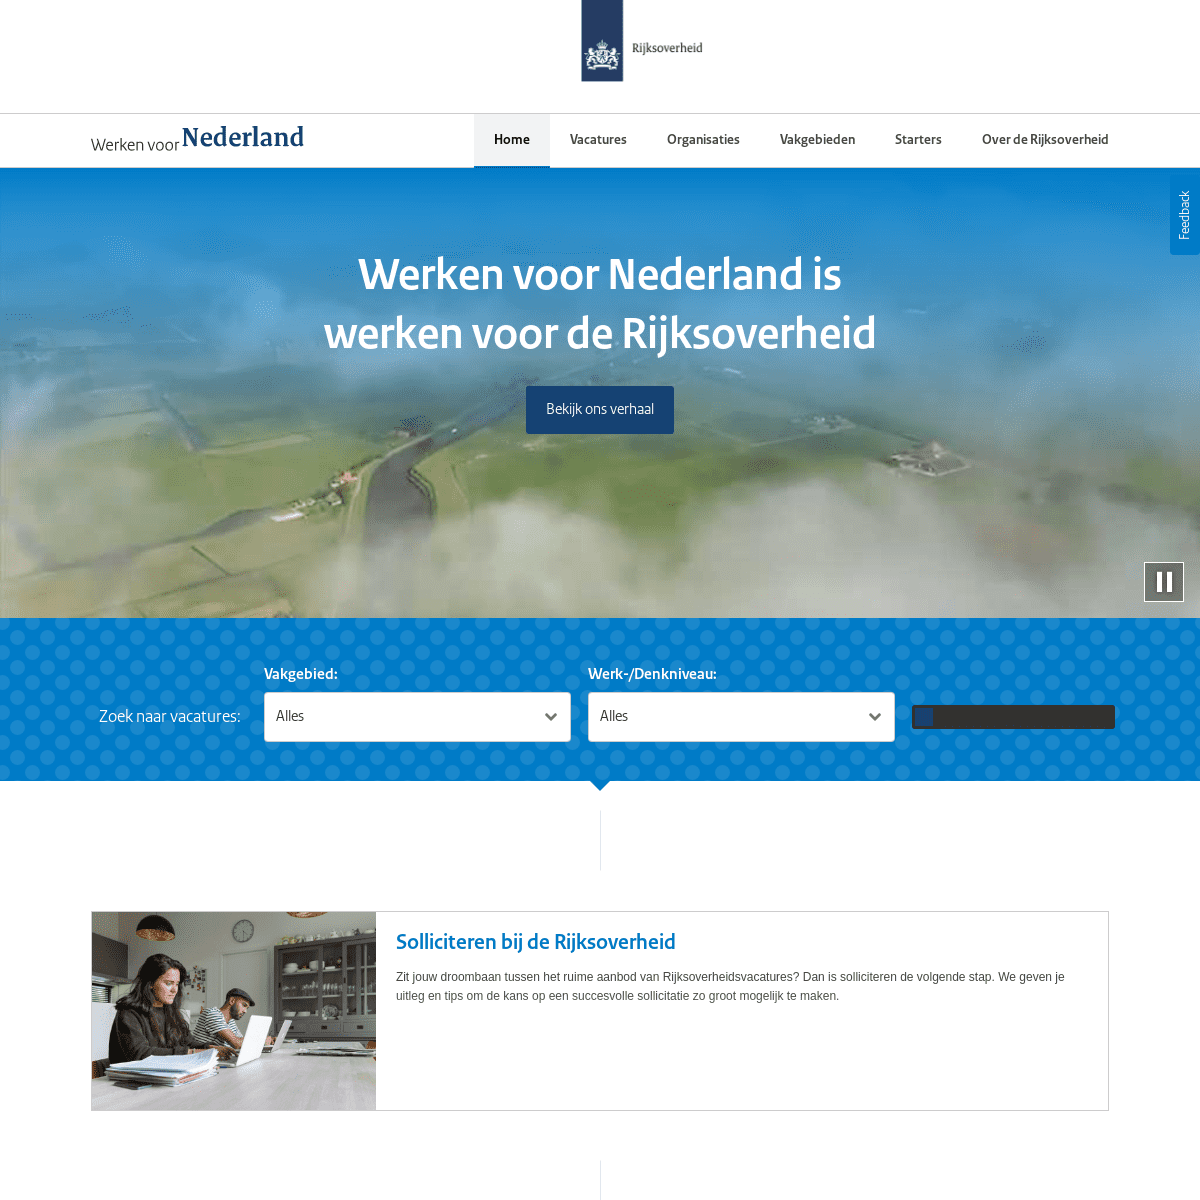 A complete backup of https://werkenvoornederland.nl